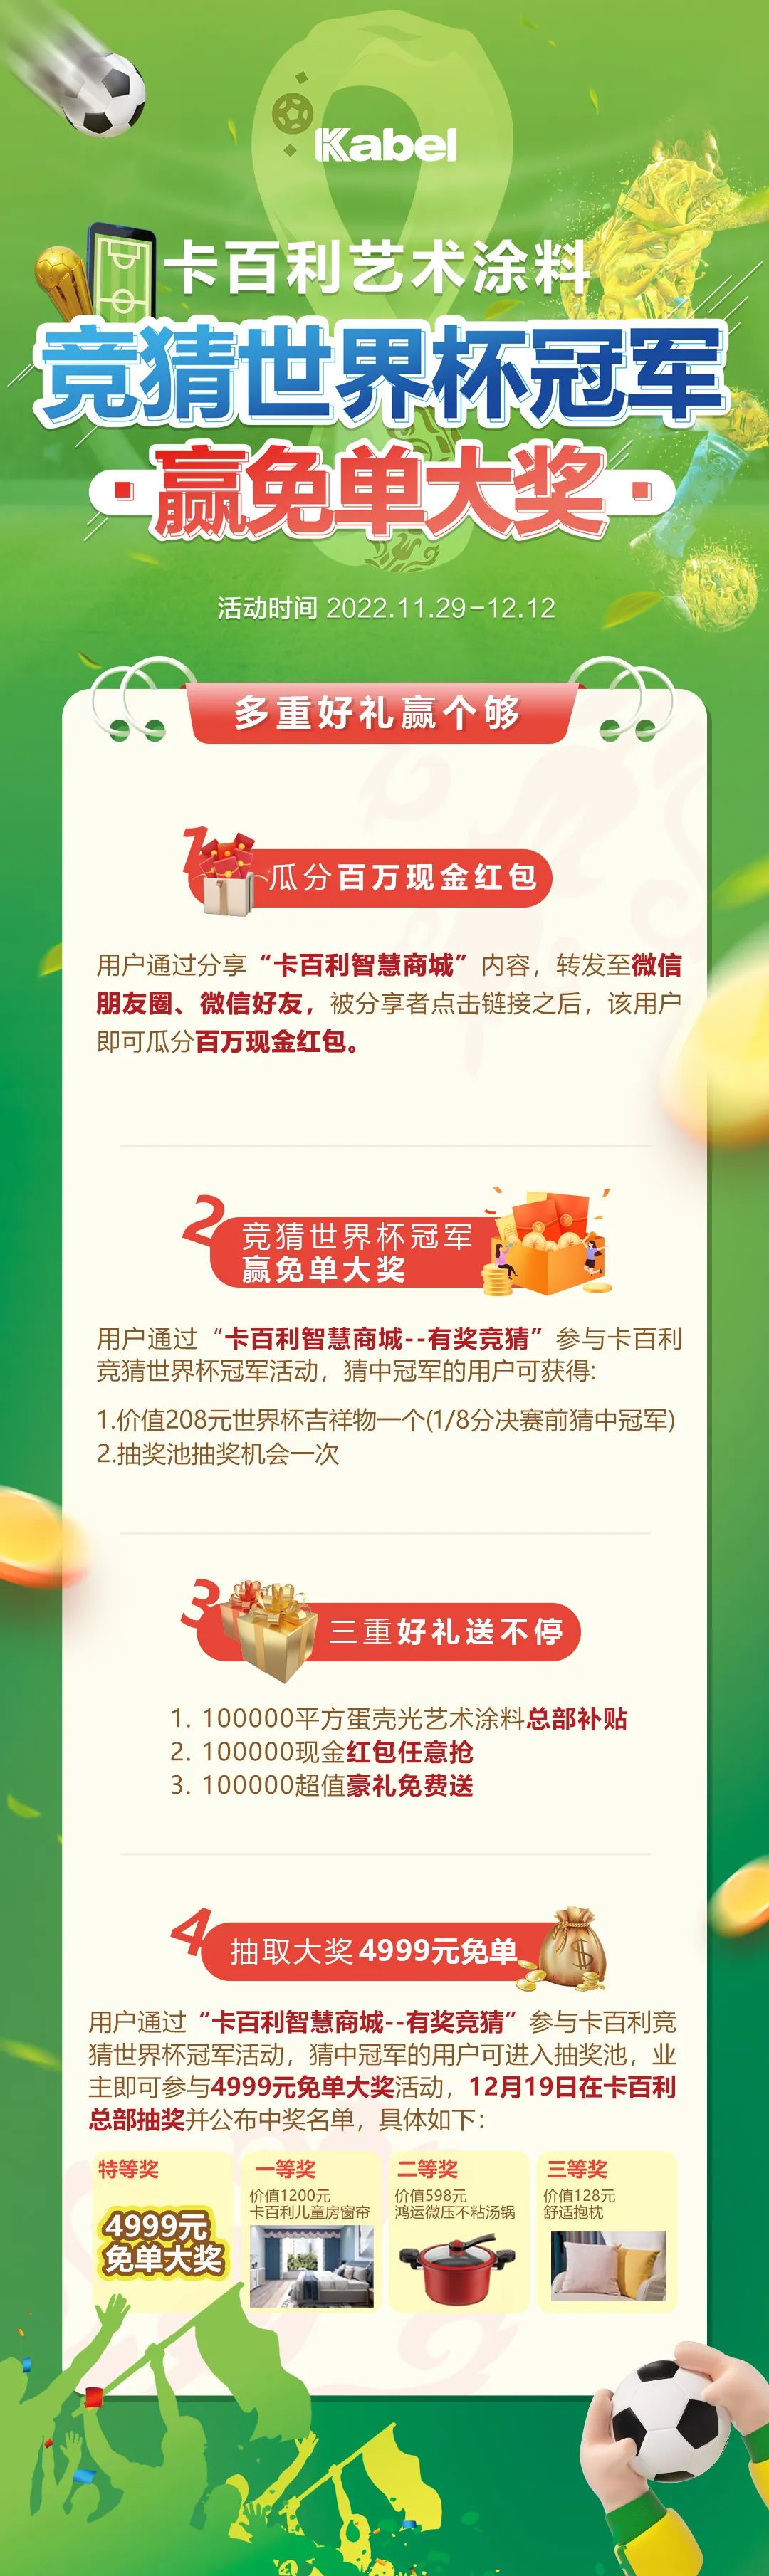 猜中世界杯冠军，就送“饺子皮”吉祥物，还有4999元免单大奖等！